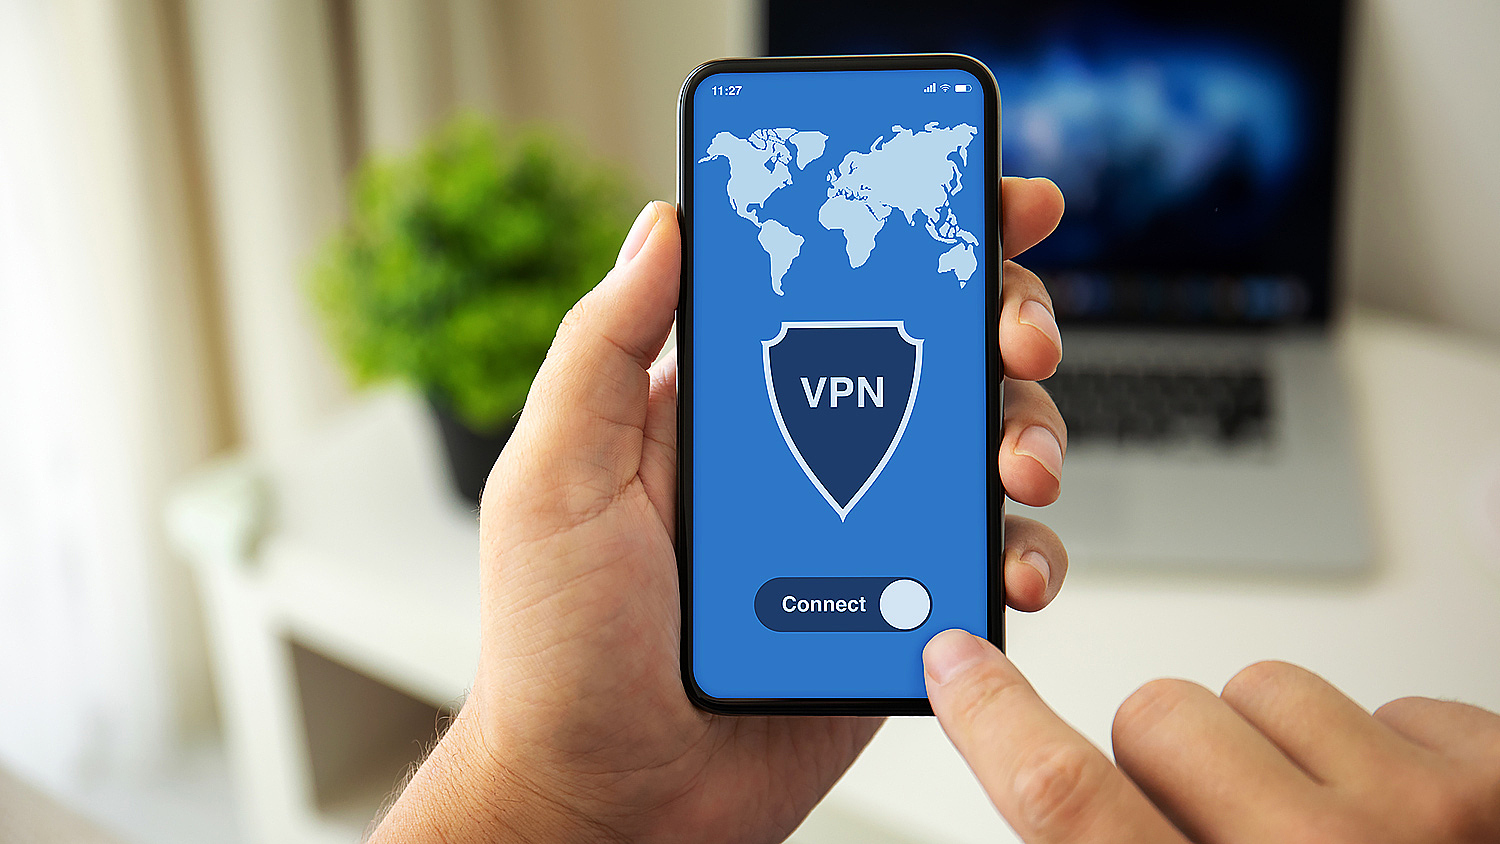 База данных 21 млн пользователей VPN попала в сеть